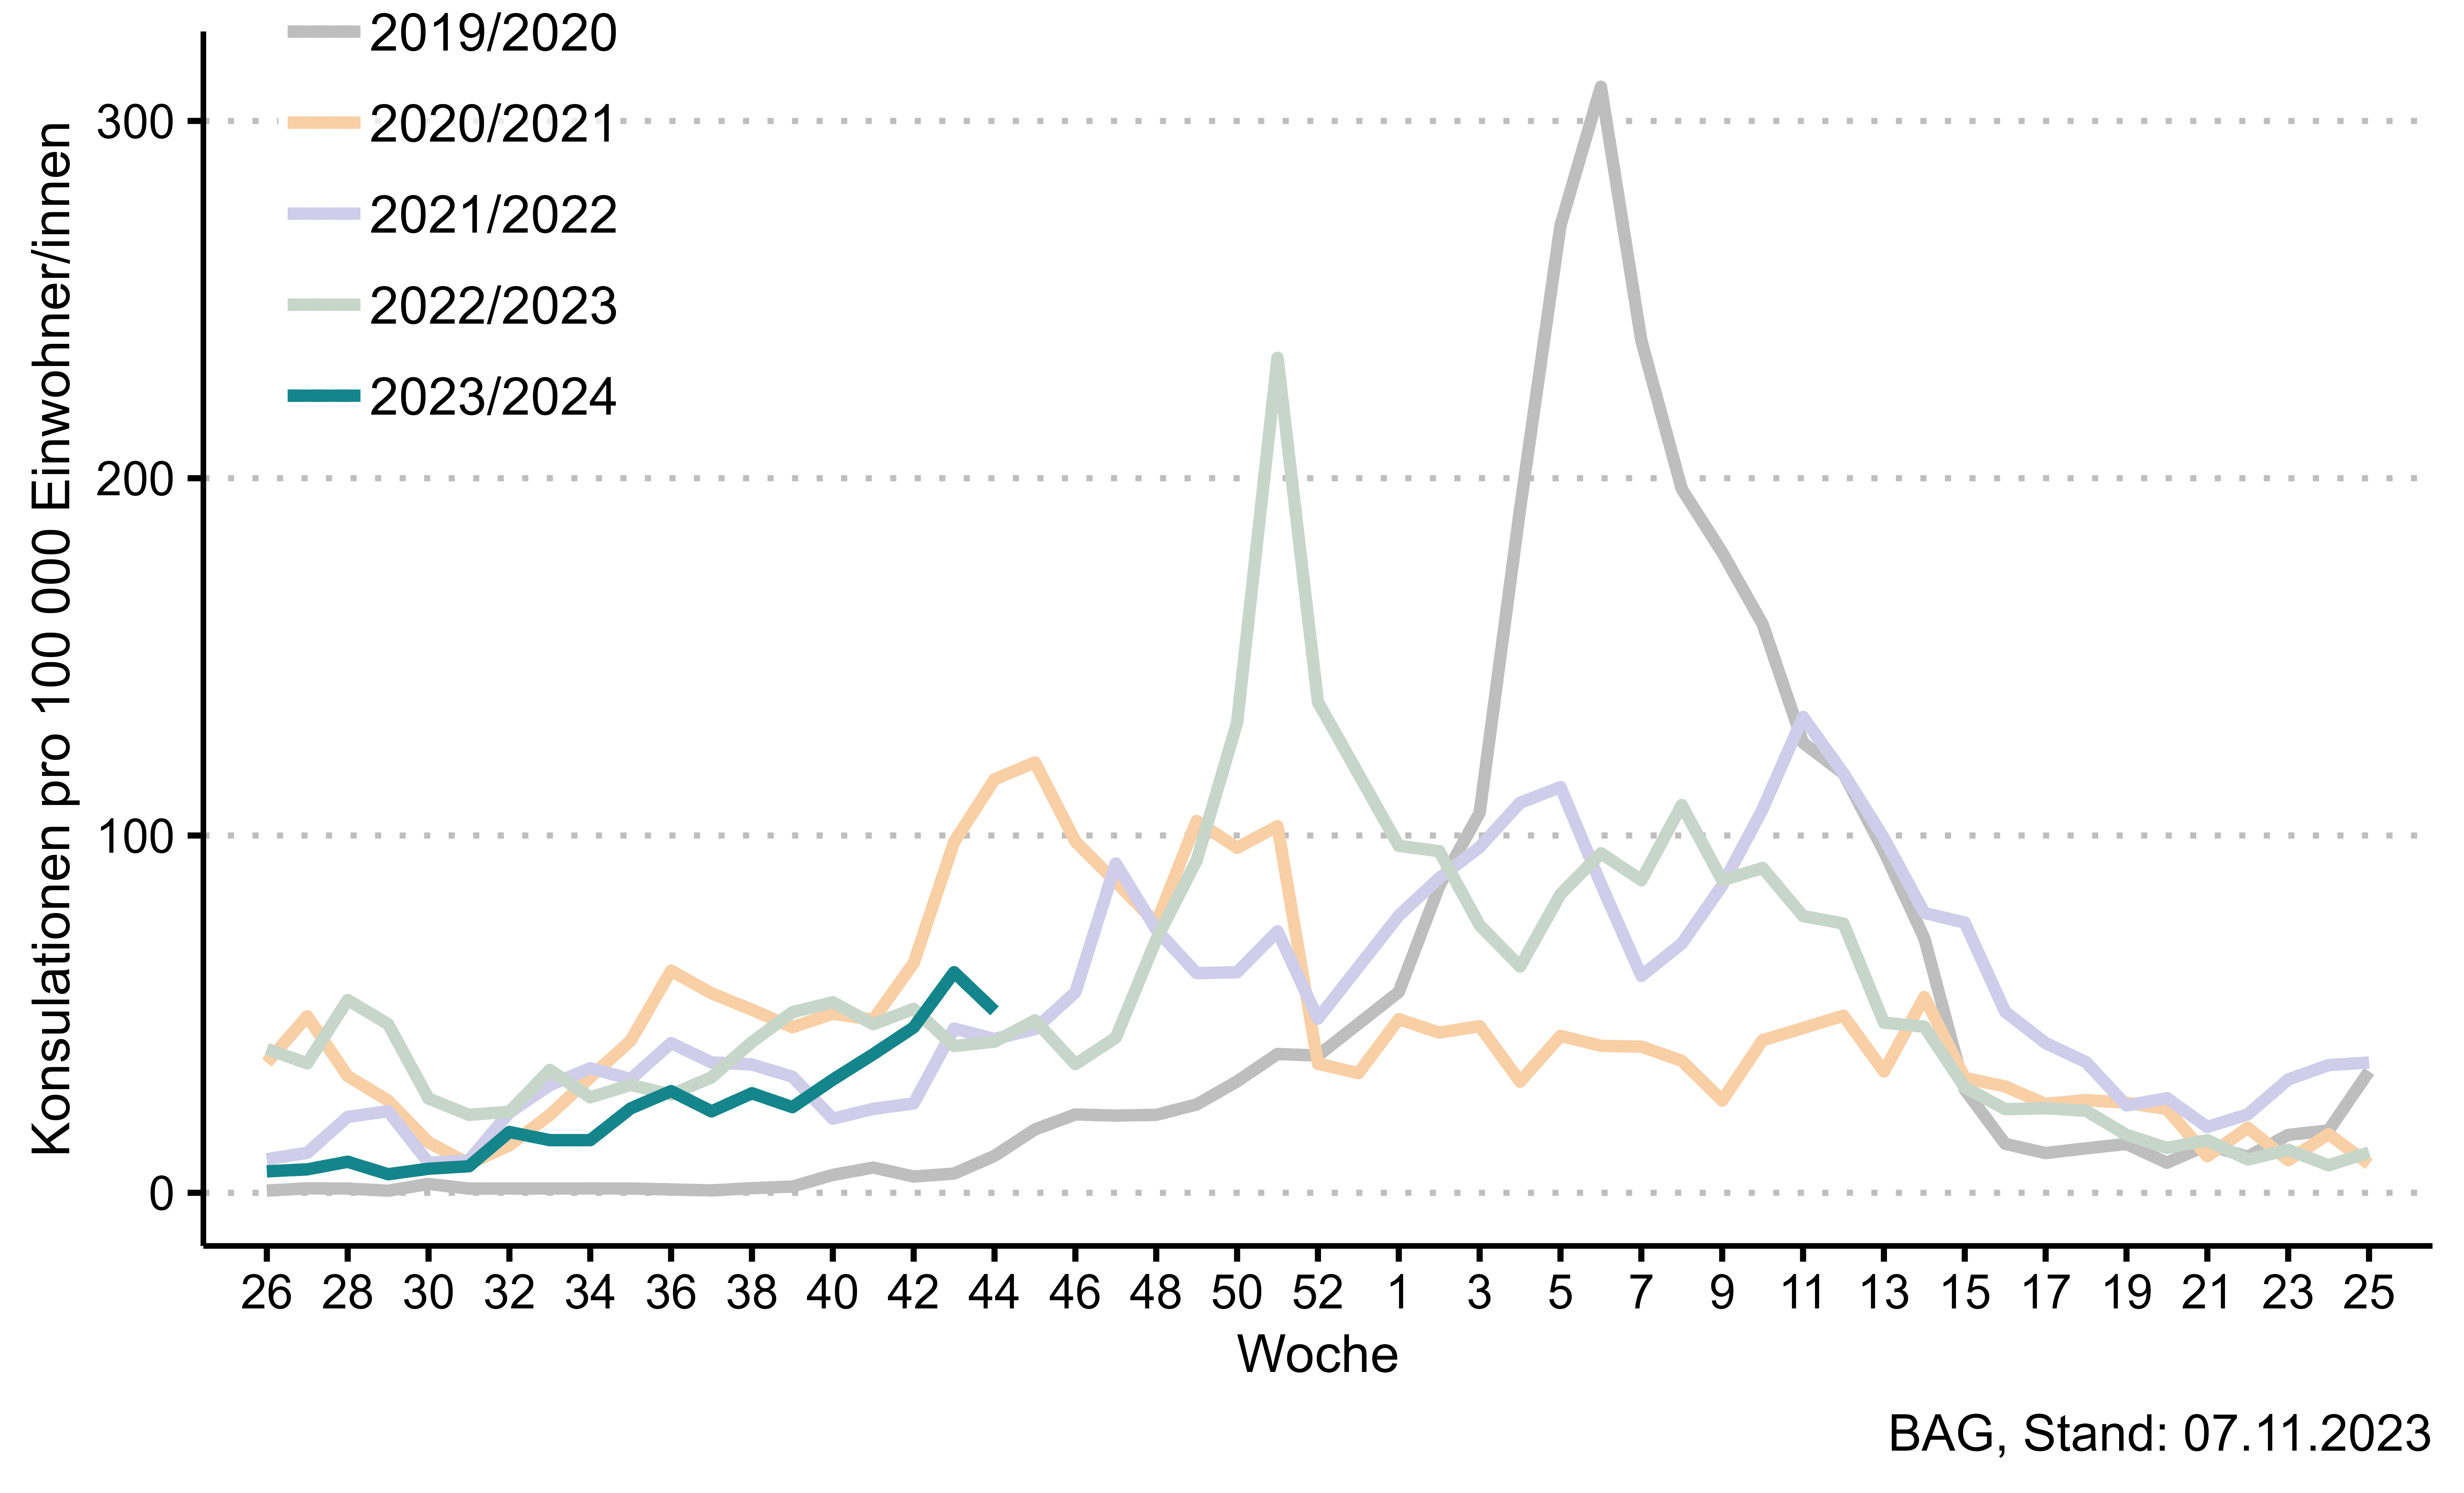 Abbildung 1: Wöchentliche Zahl der Konsultationen aufgrund grippeähnlicher Erkrankung, hochgerechnet auf 100 000 Einwohner. Auf die Angabe eines epidemischen Schwellenwerts wird seit Saison 2020/21 verzichtet. 